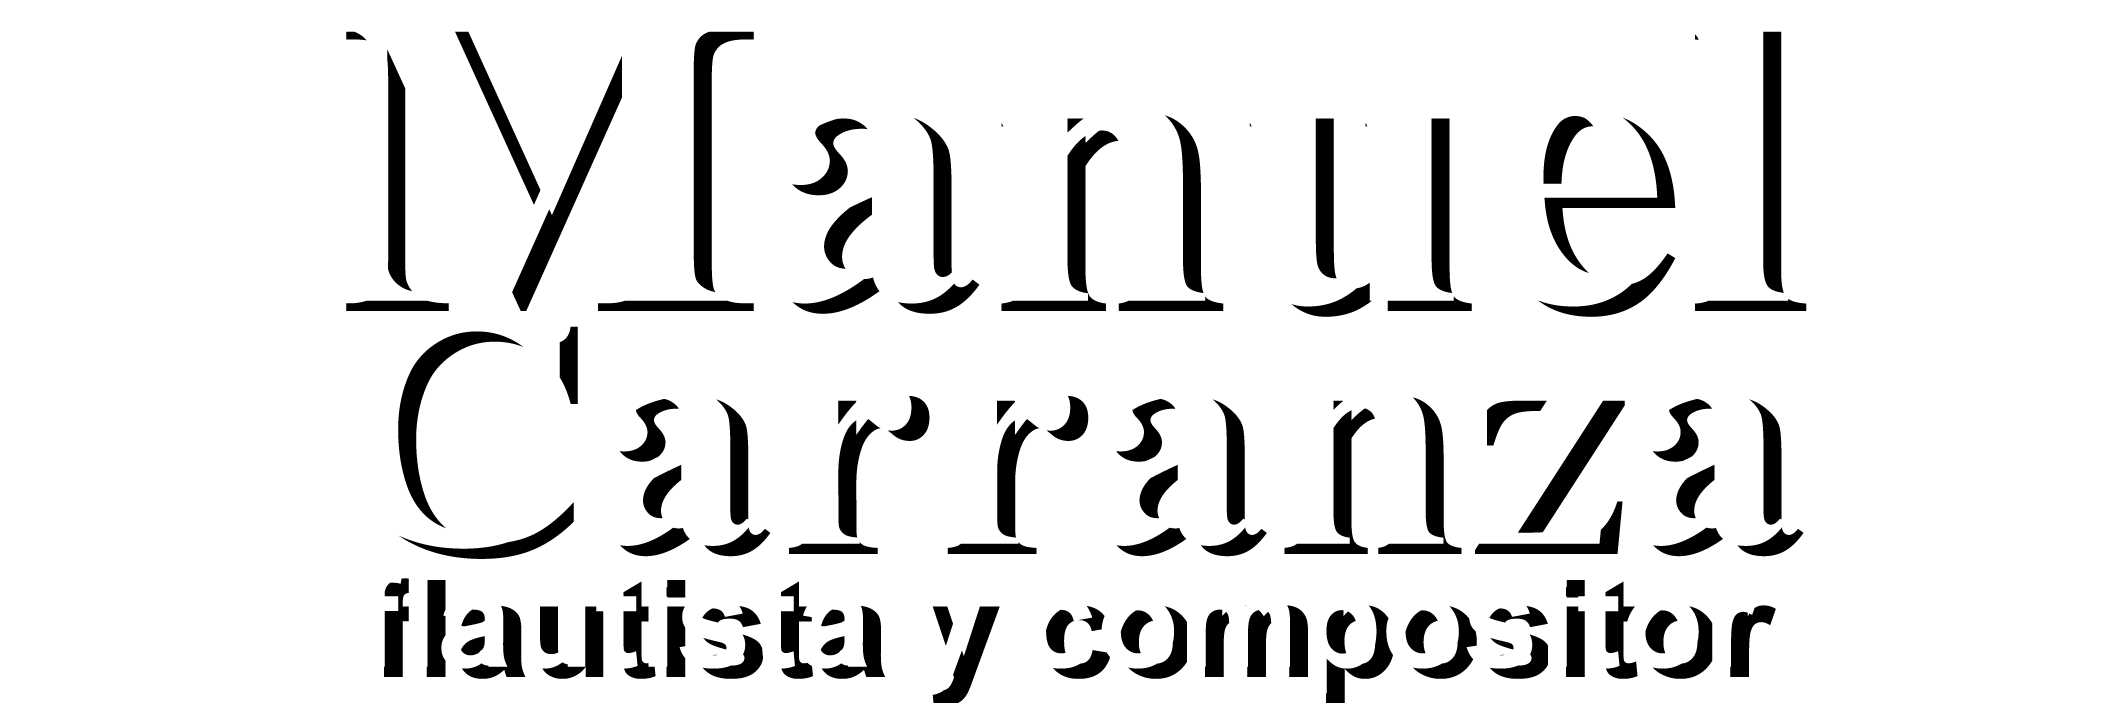 Manuel Carranza